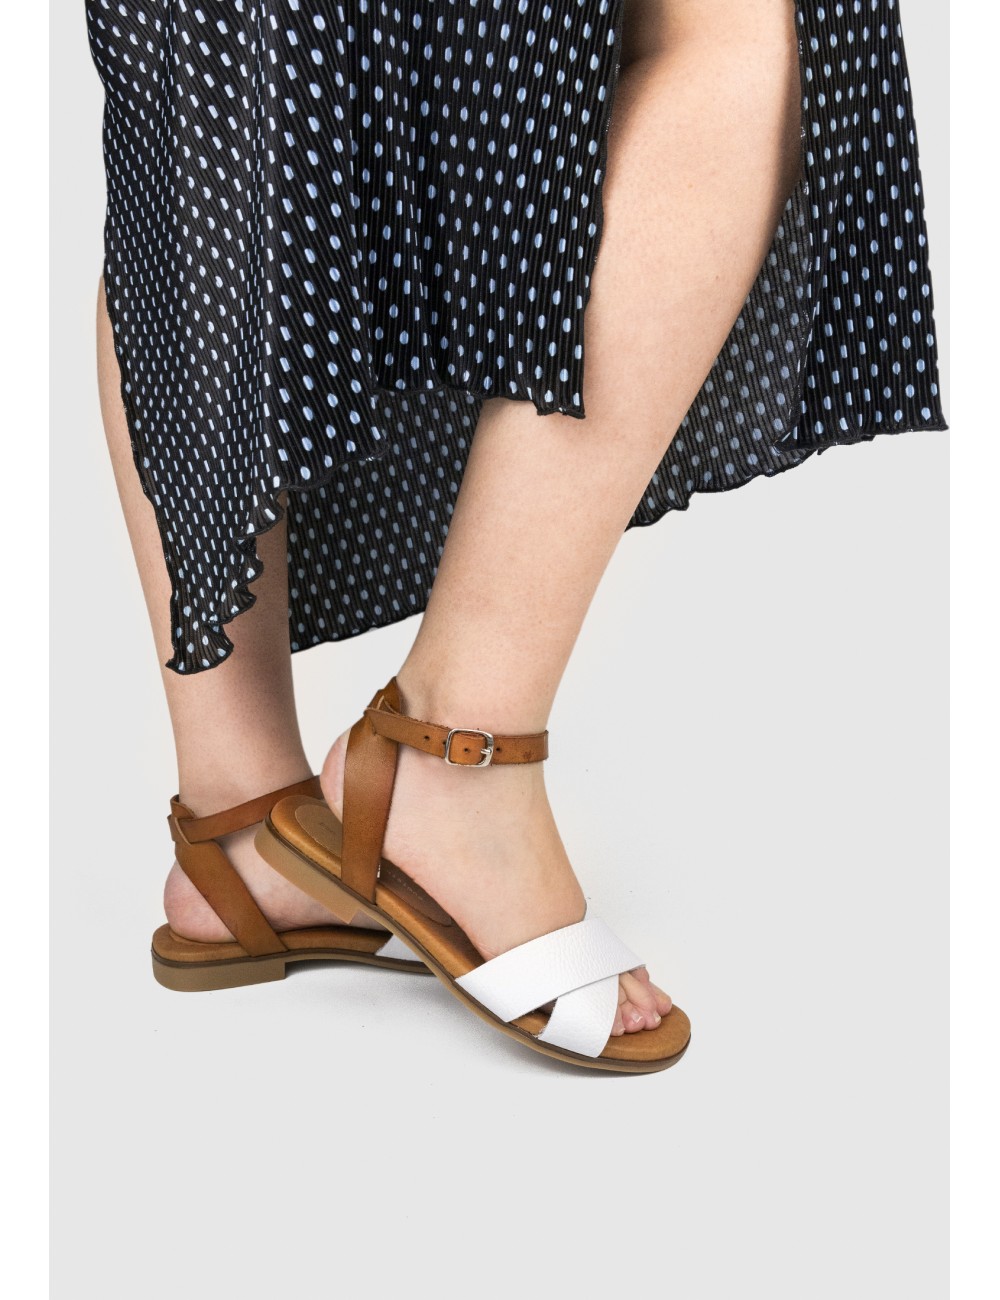 Castellanisimos Zapato Náutico de Mujer en Piel Marrón Verano Cómodo Elegante 